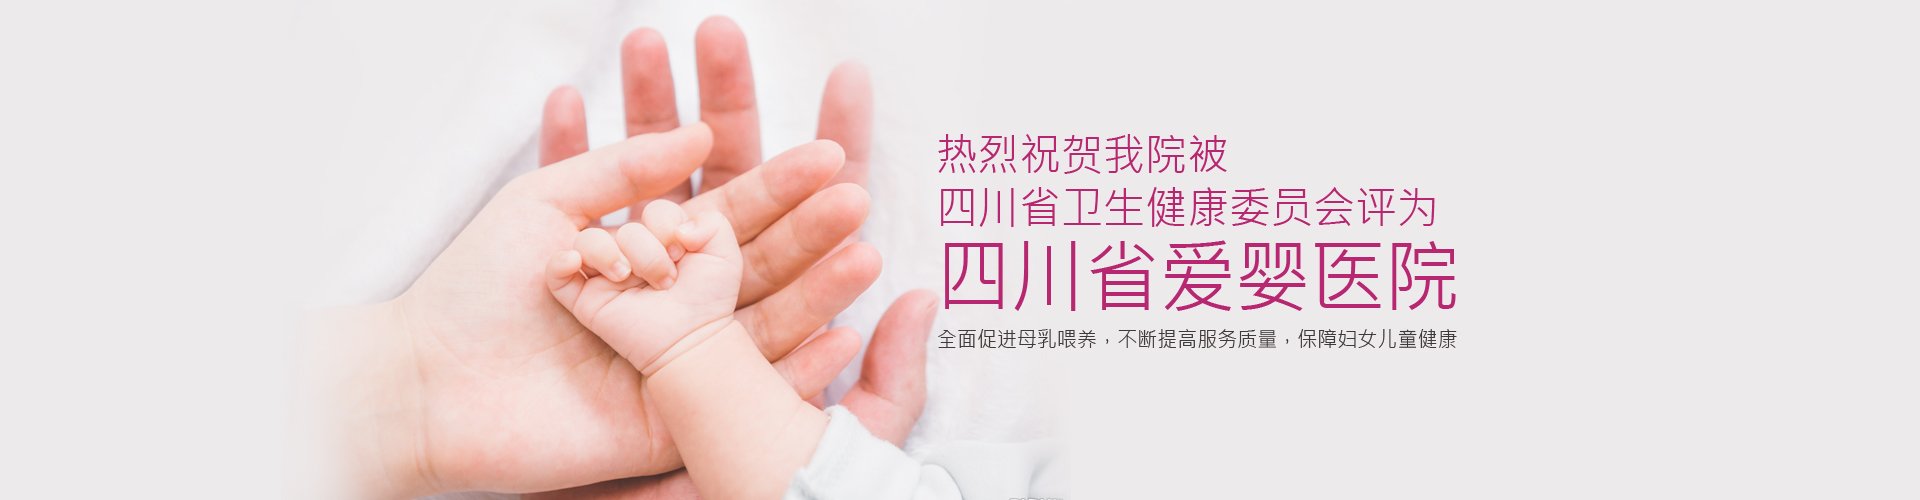 我院被评为四川省爱婴医